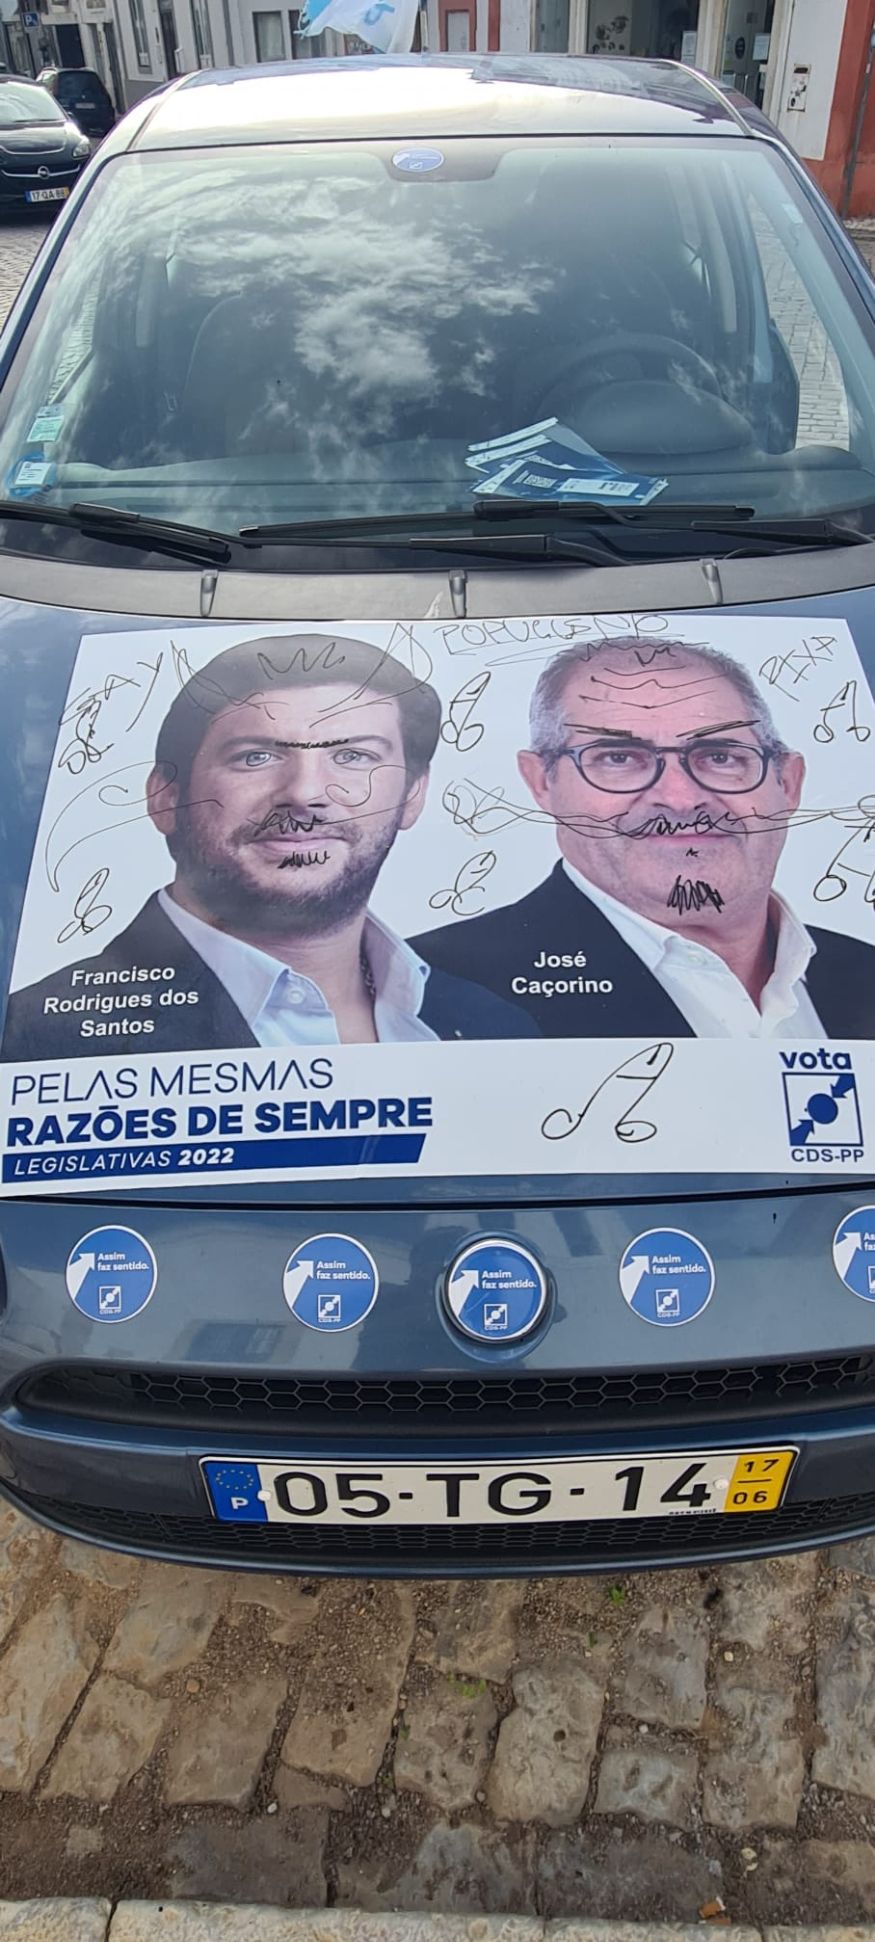 Vandalismo entra na campanha em Faro e o alvo foi o veículo de Campanha do CDS-PP